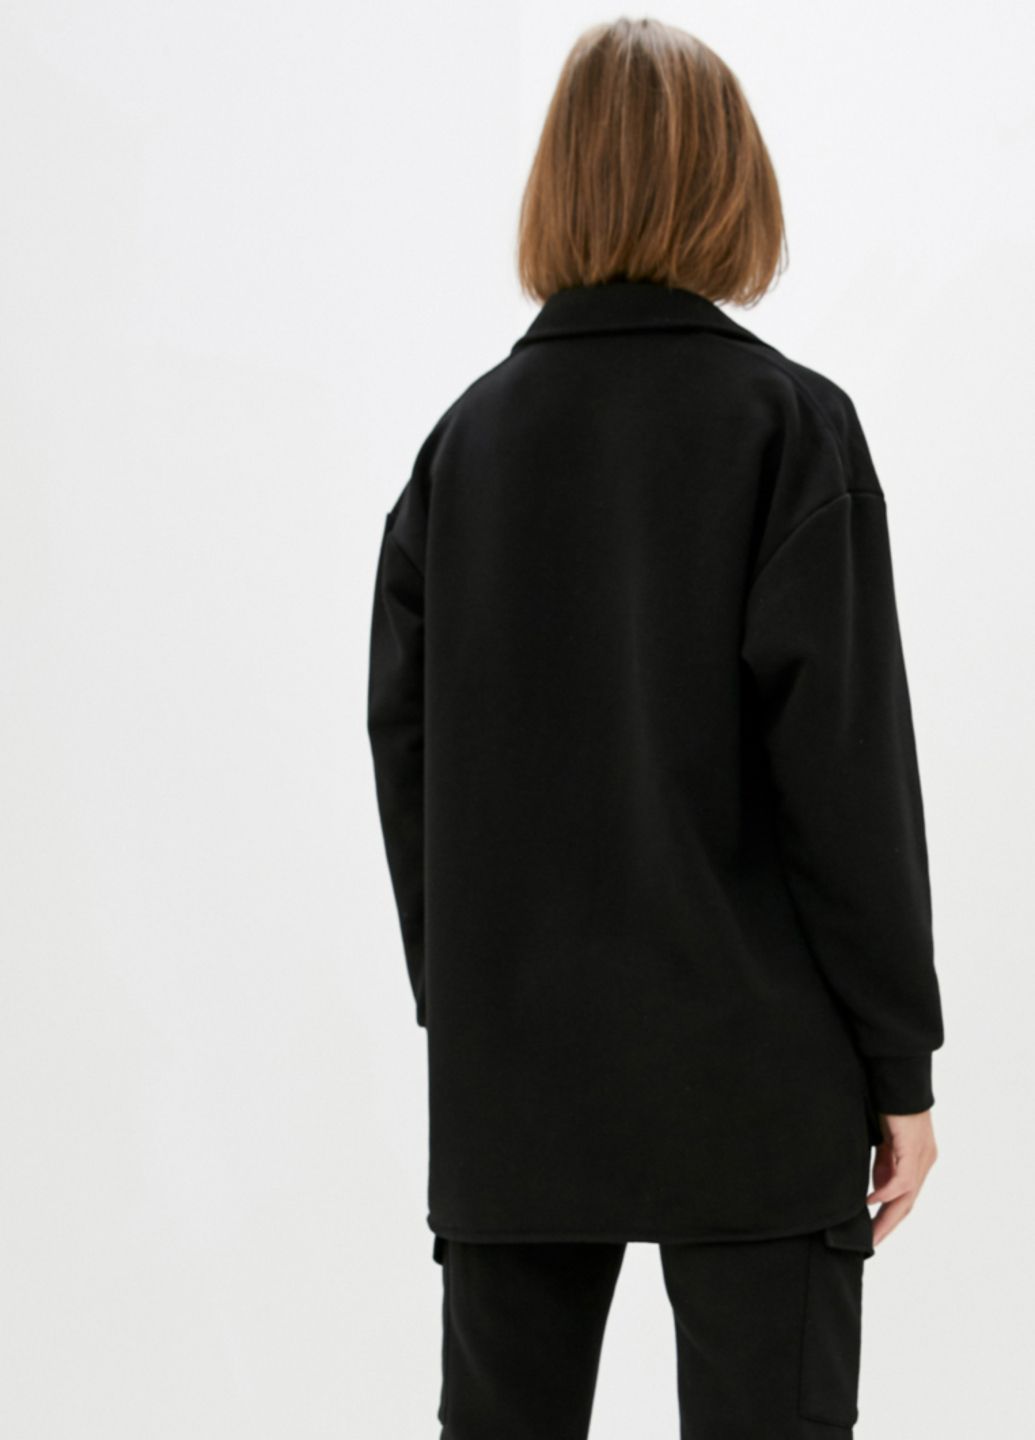 Купить Трикотажная рубашка женская оверсайз Merlini Барселона 200000055 - Черный, 42-44 в интернет-магазине